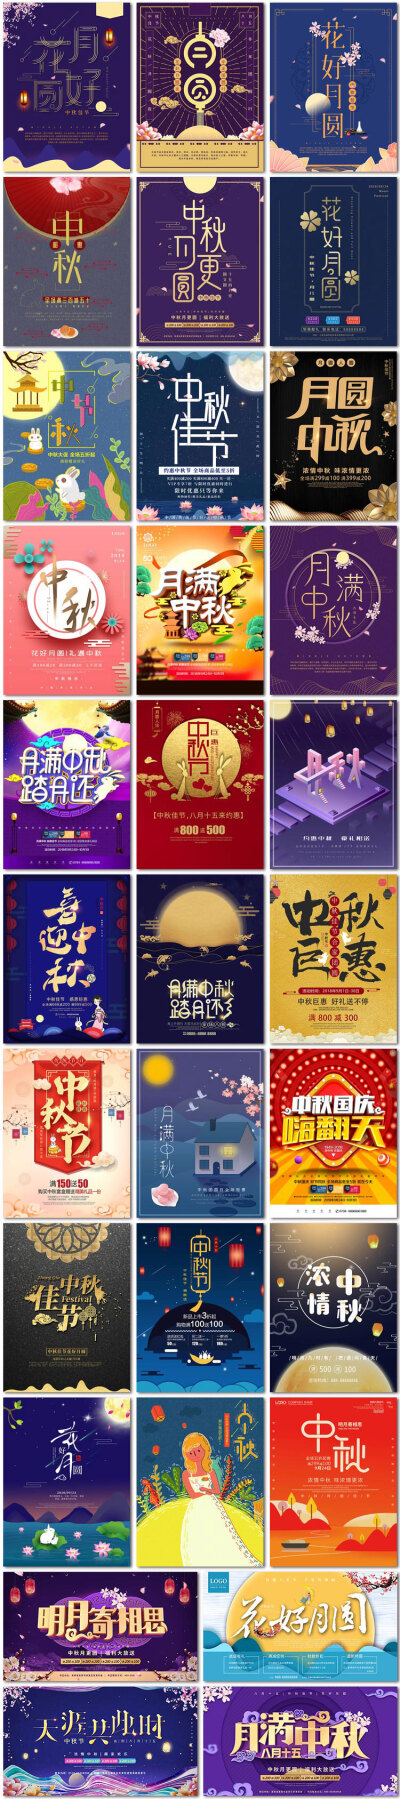 中秋节节日活动电商月饼海报展板背景板psd模板素材设计